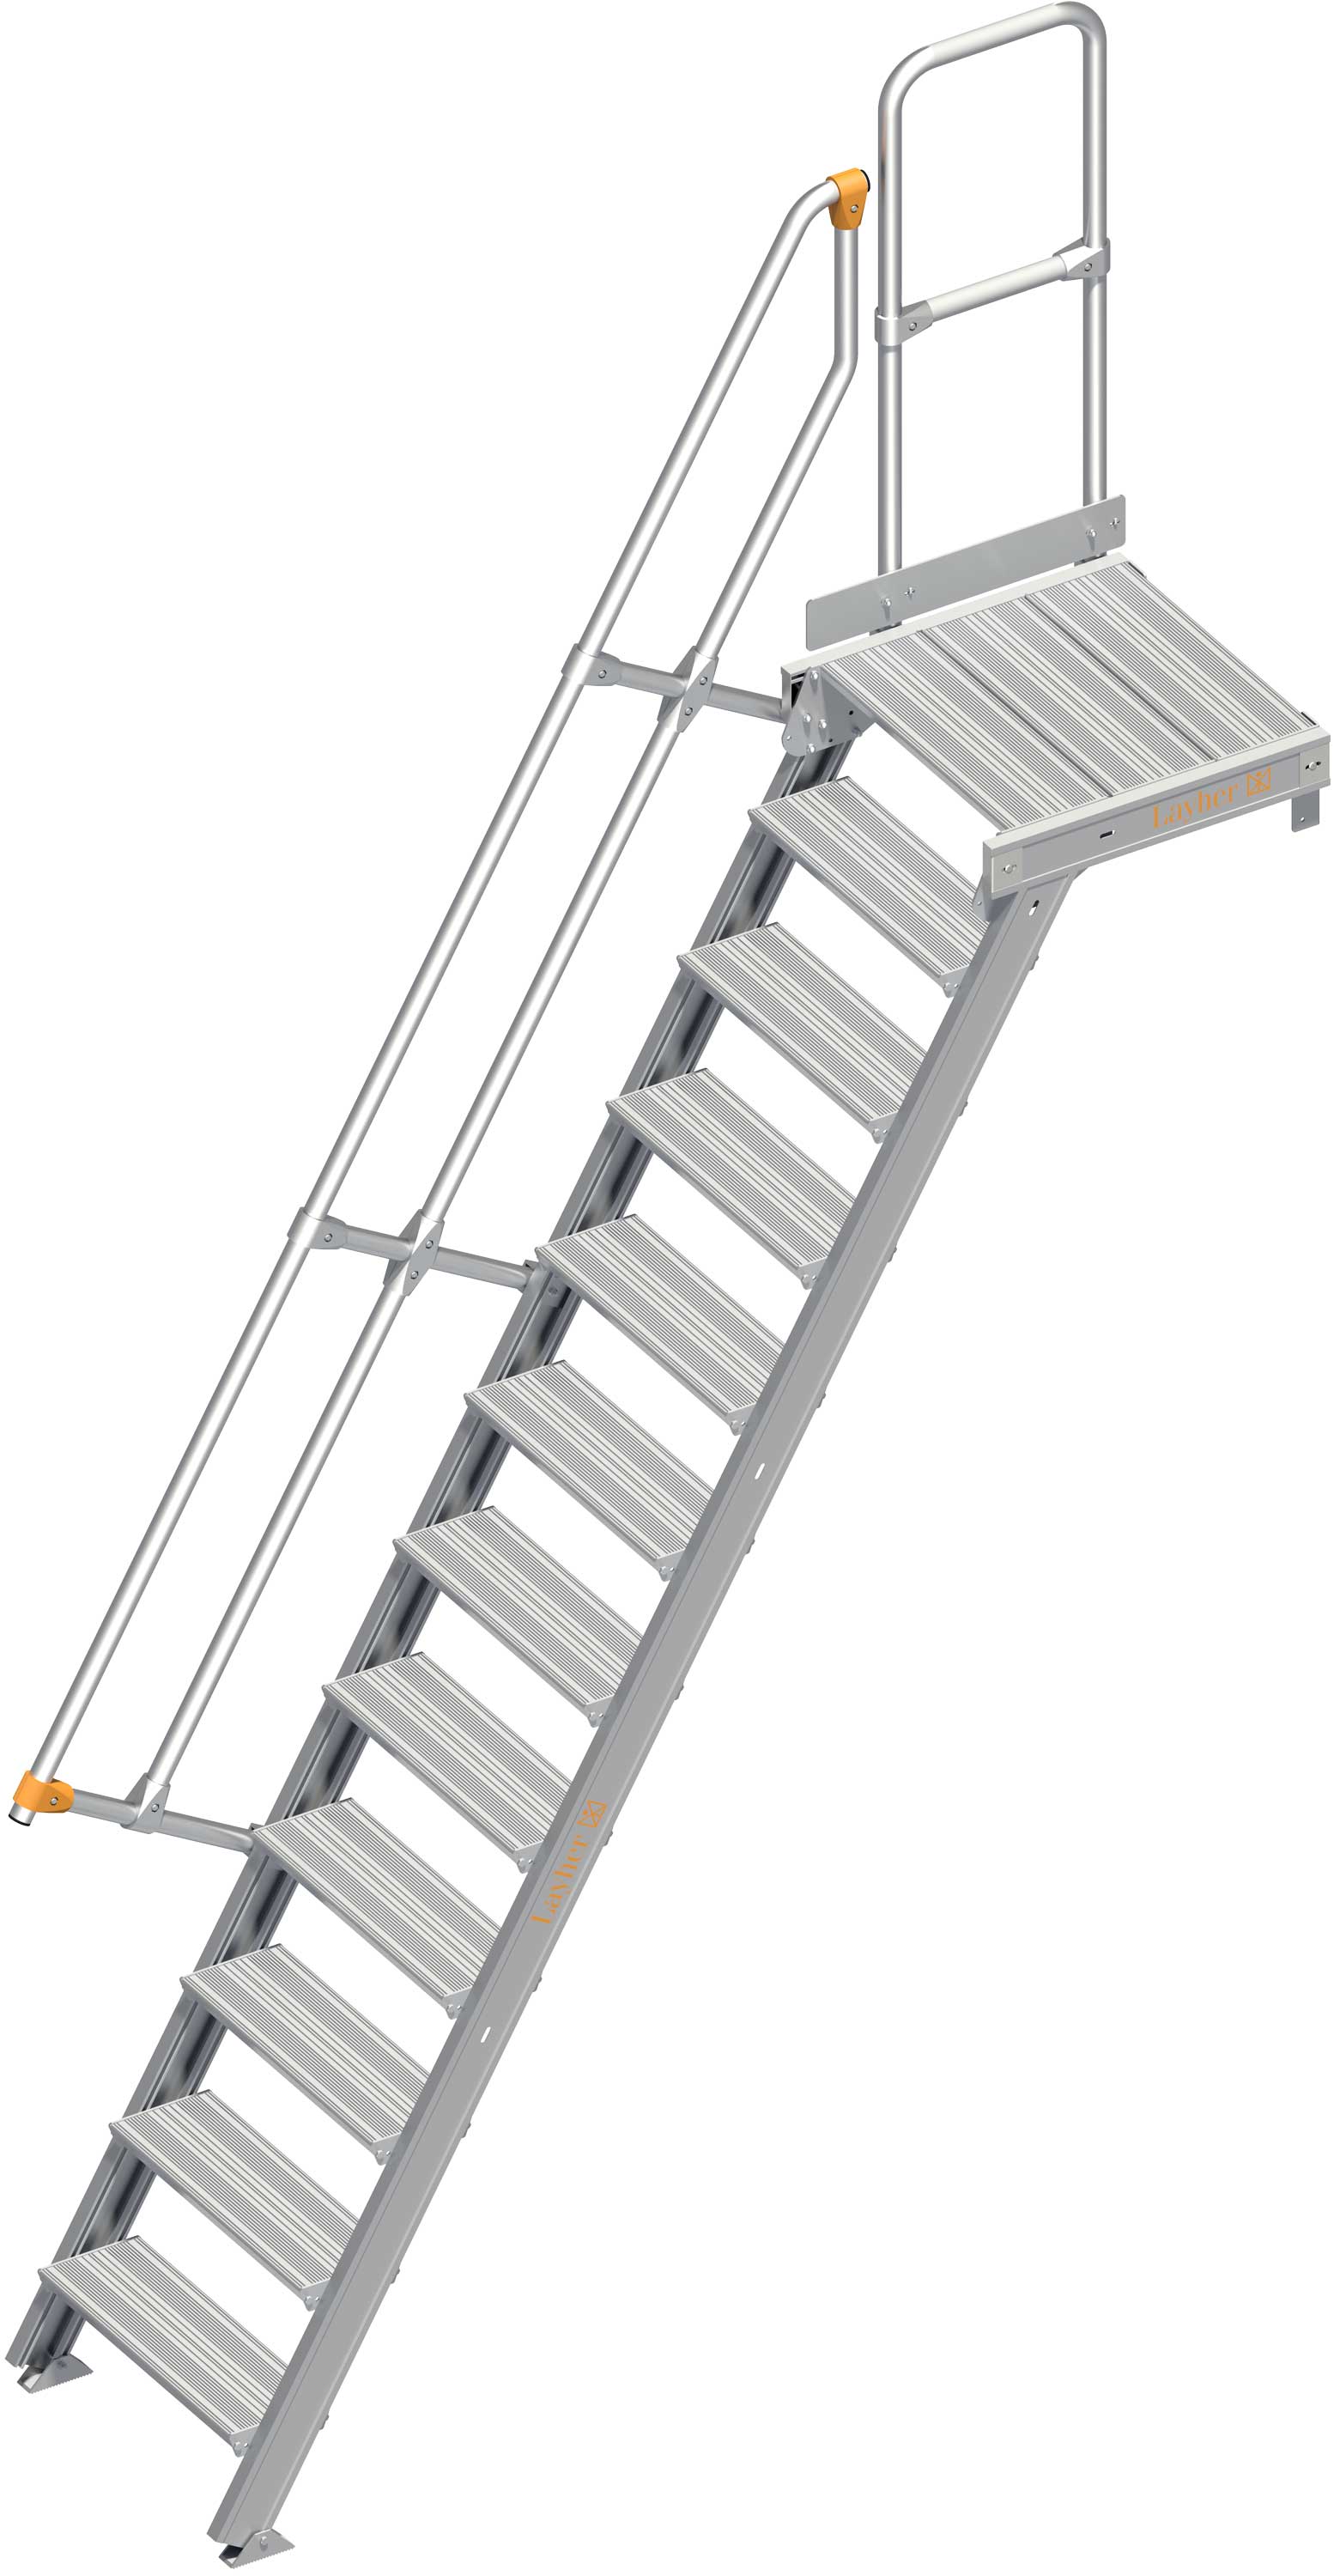 Layher Plattformtreppe 60° 12 Stufen - 600 mm breit